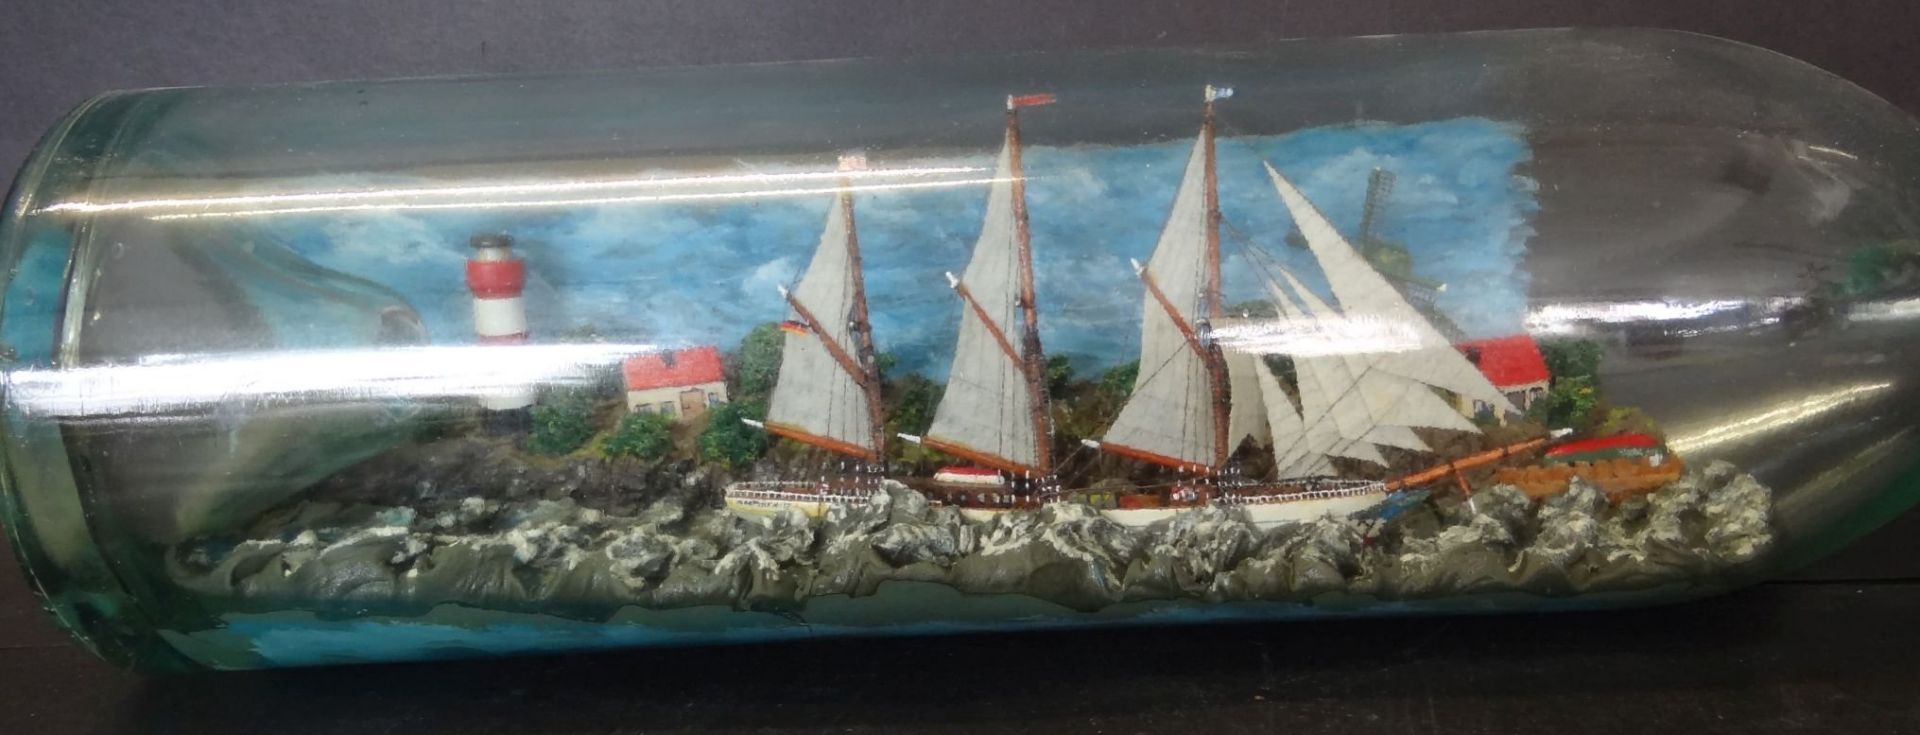 gr. 3 Liter Buddelschiff mit Diorama, Leuchtturm und Windmühle, H-11 cm, L-50 cm - Bild 2 aus 7